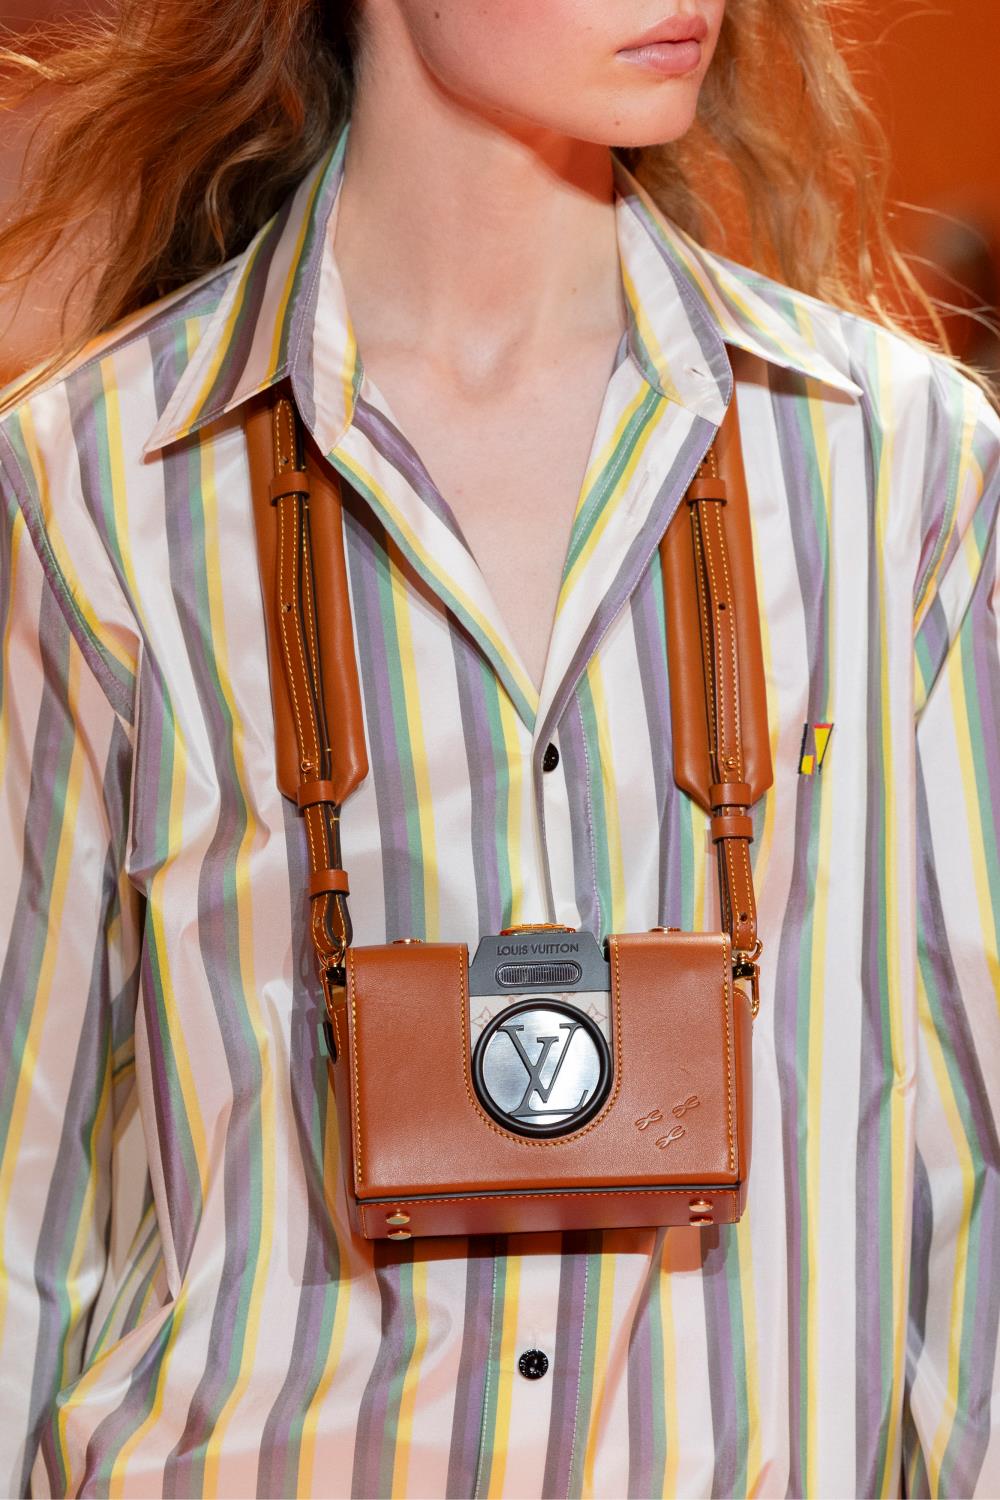 Khơi dậy cảm hứng viễn du với những mẫu túi mới nhất của Louis Vuitton - Ảnh 6.